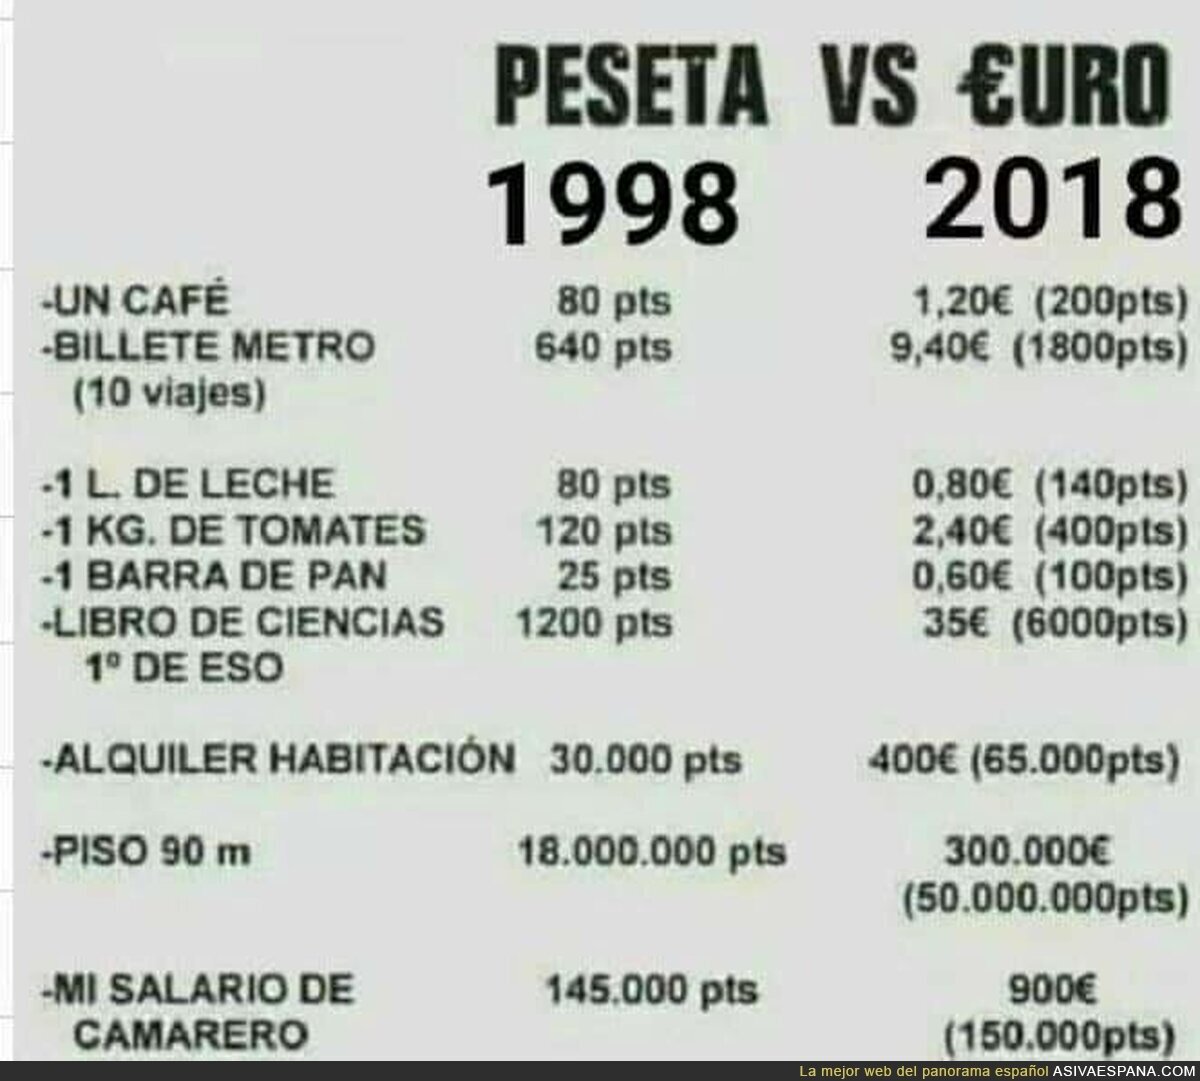 La gran diferencia en España entre la peseta y el euro